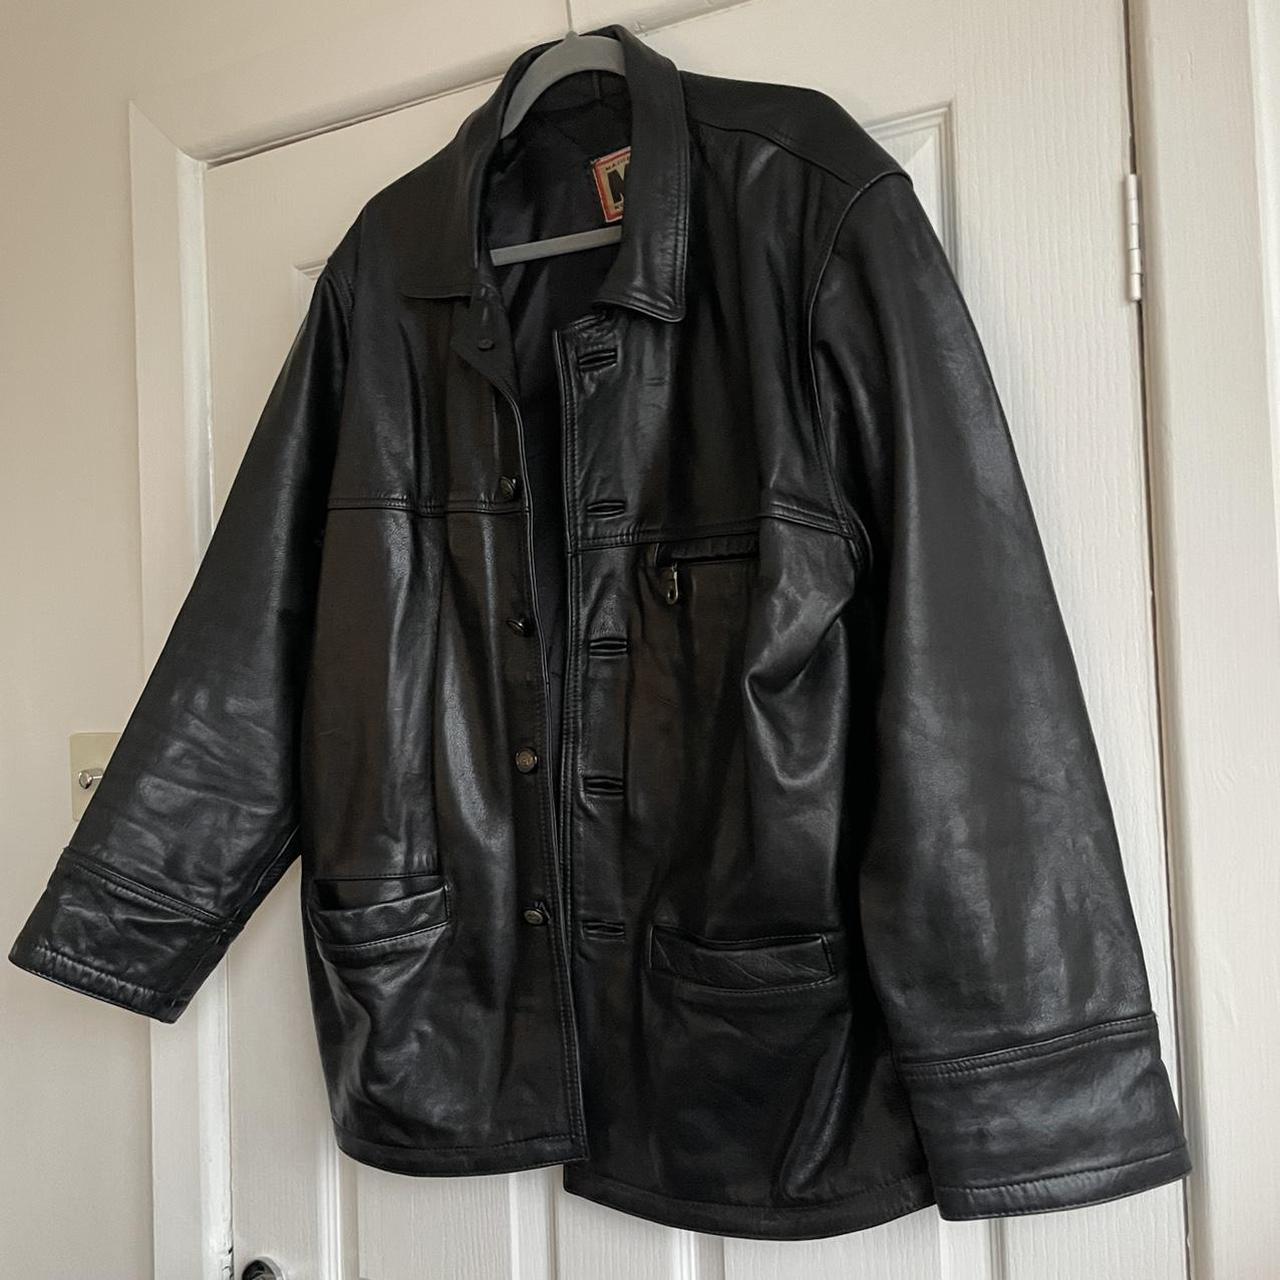 Black vintage real leather jacket mens/unisex MDK -... - Depop